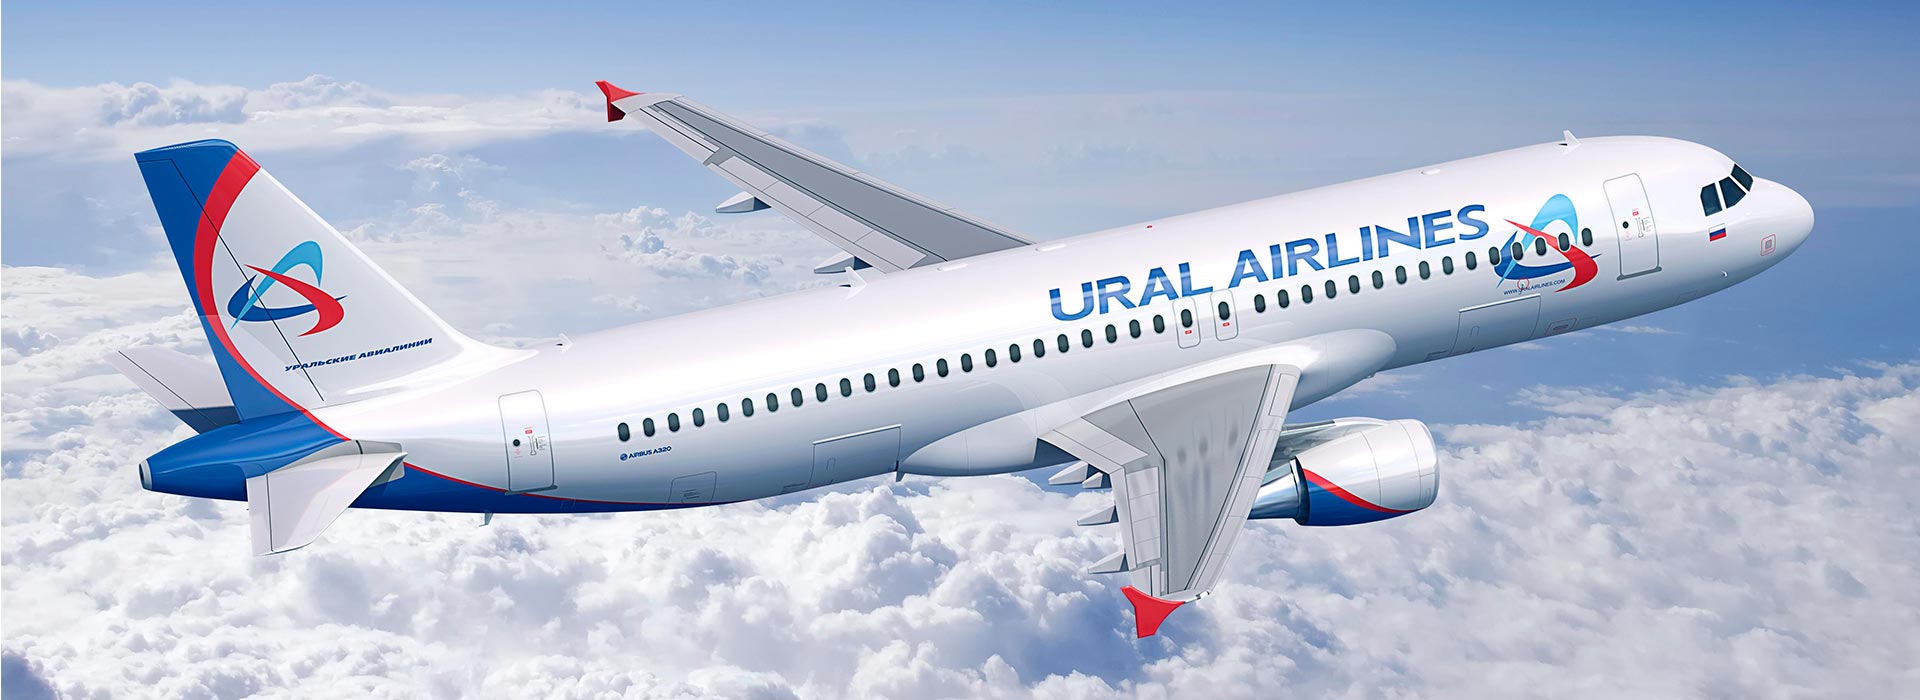 Как купить дешевые авиабилеты Ural Airlines?